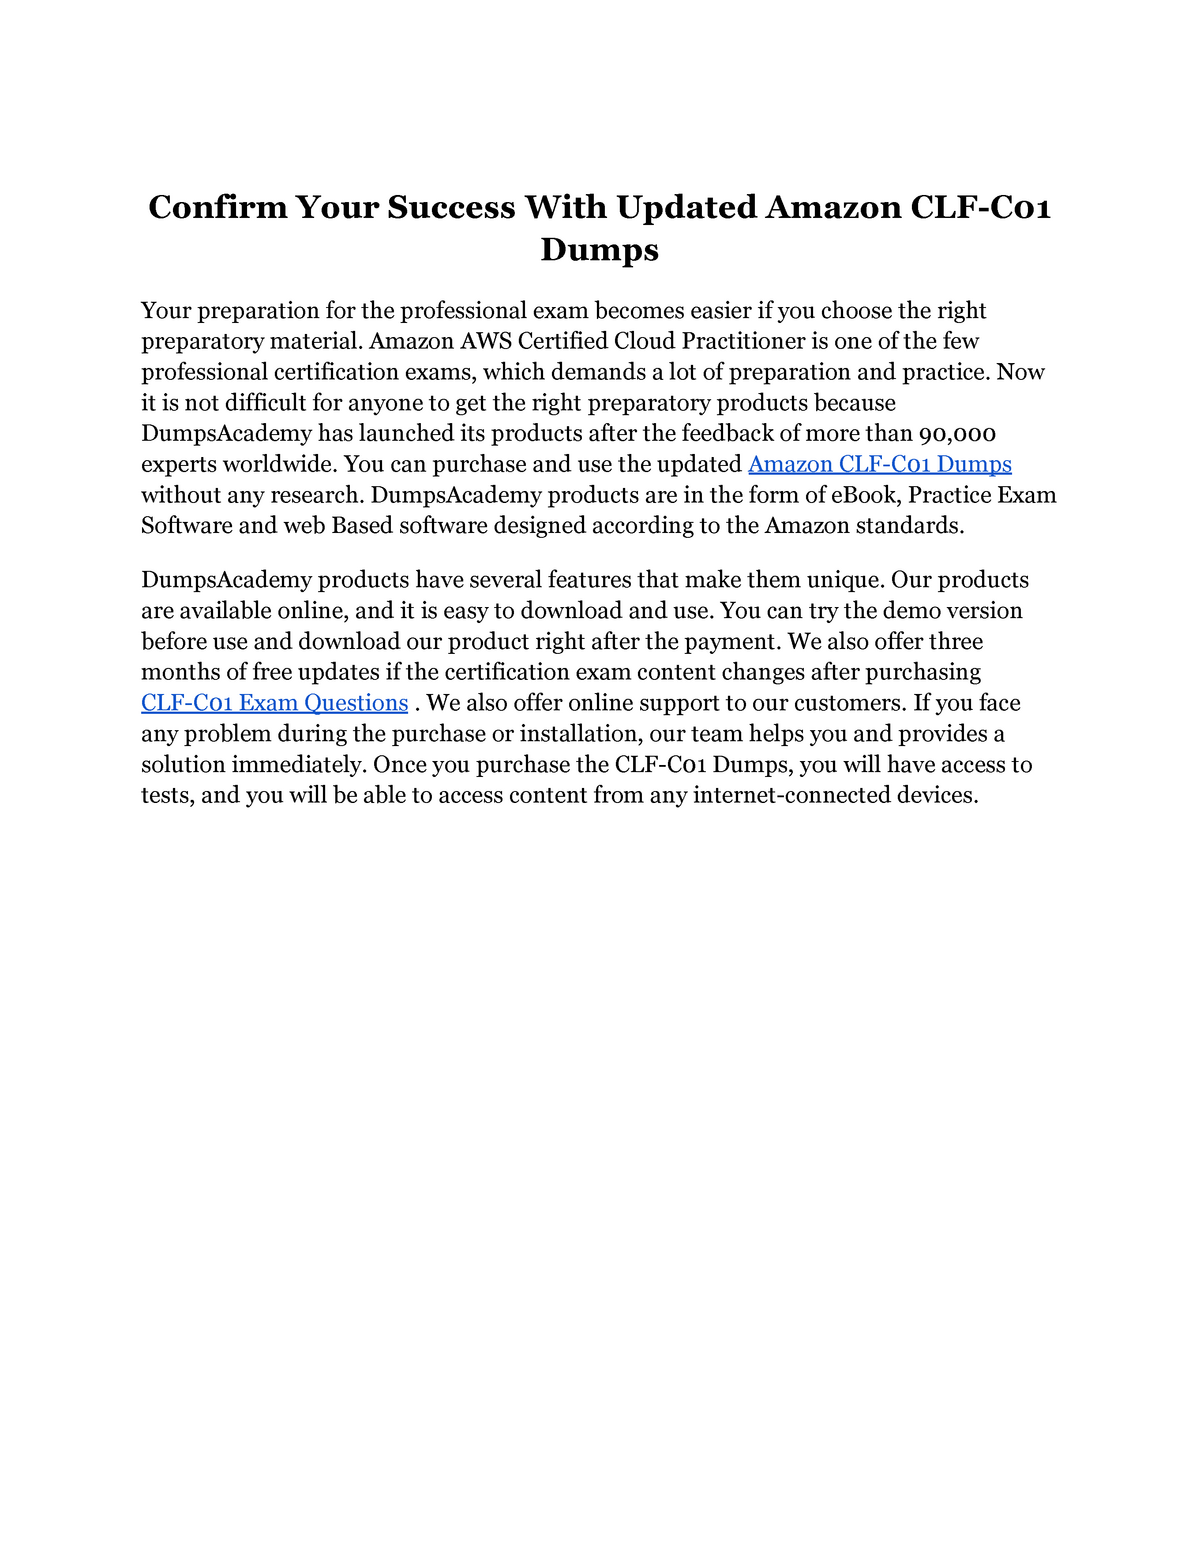 CLF-C01 Zertifizierungsantworten